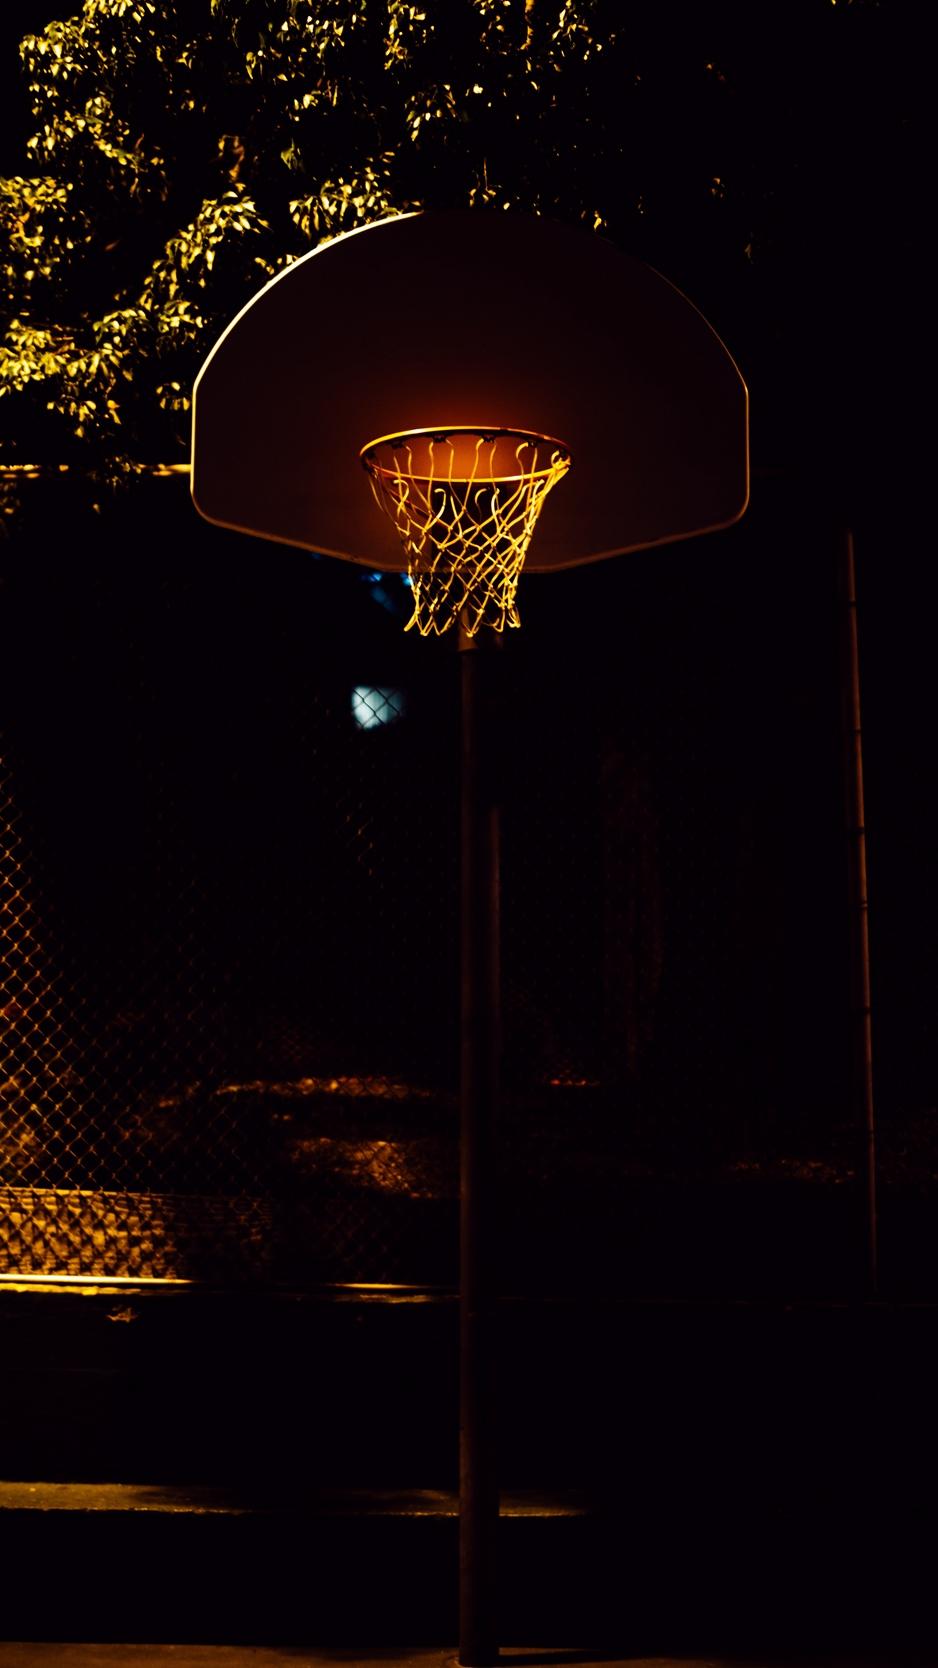 Download wallpaper 938x1668 basketball, basketball hoop